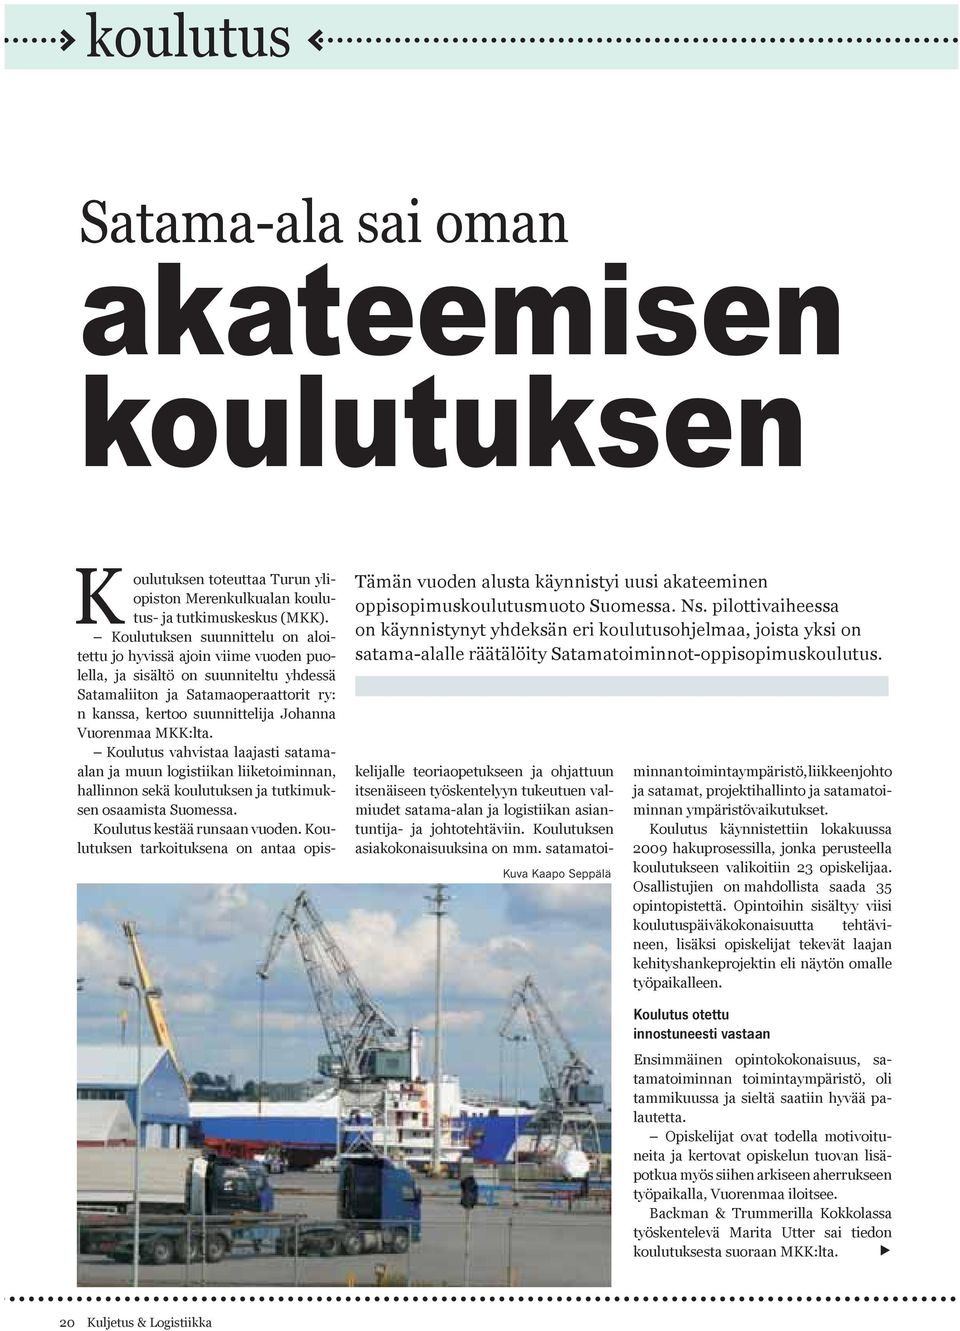 K oulutuksen toteuttaa Turun yliopiston Merenkulkualan koulutus- ja tutkimuskeskus (MKK).